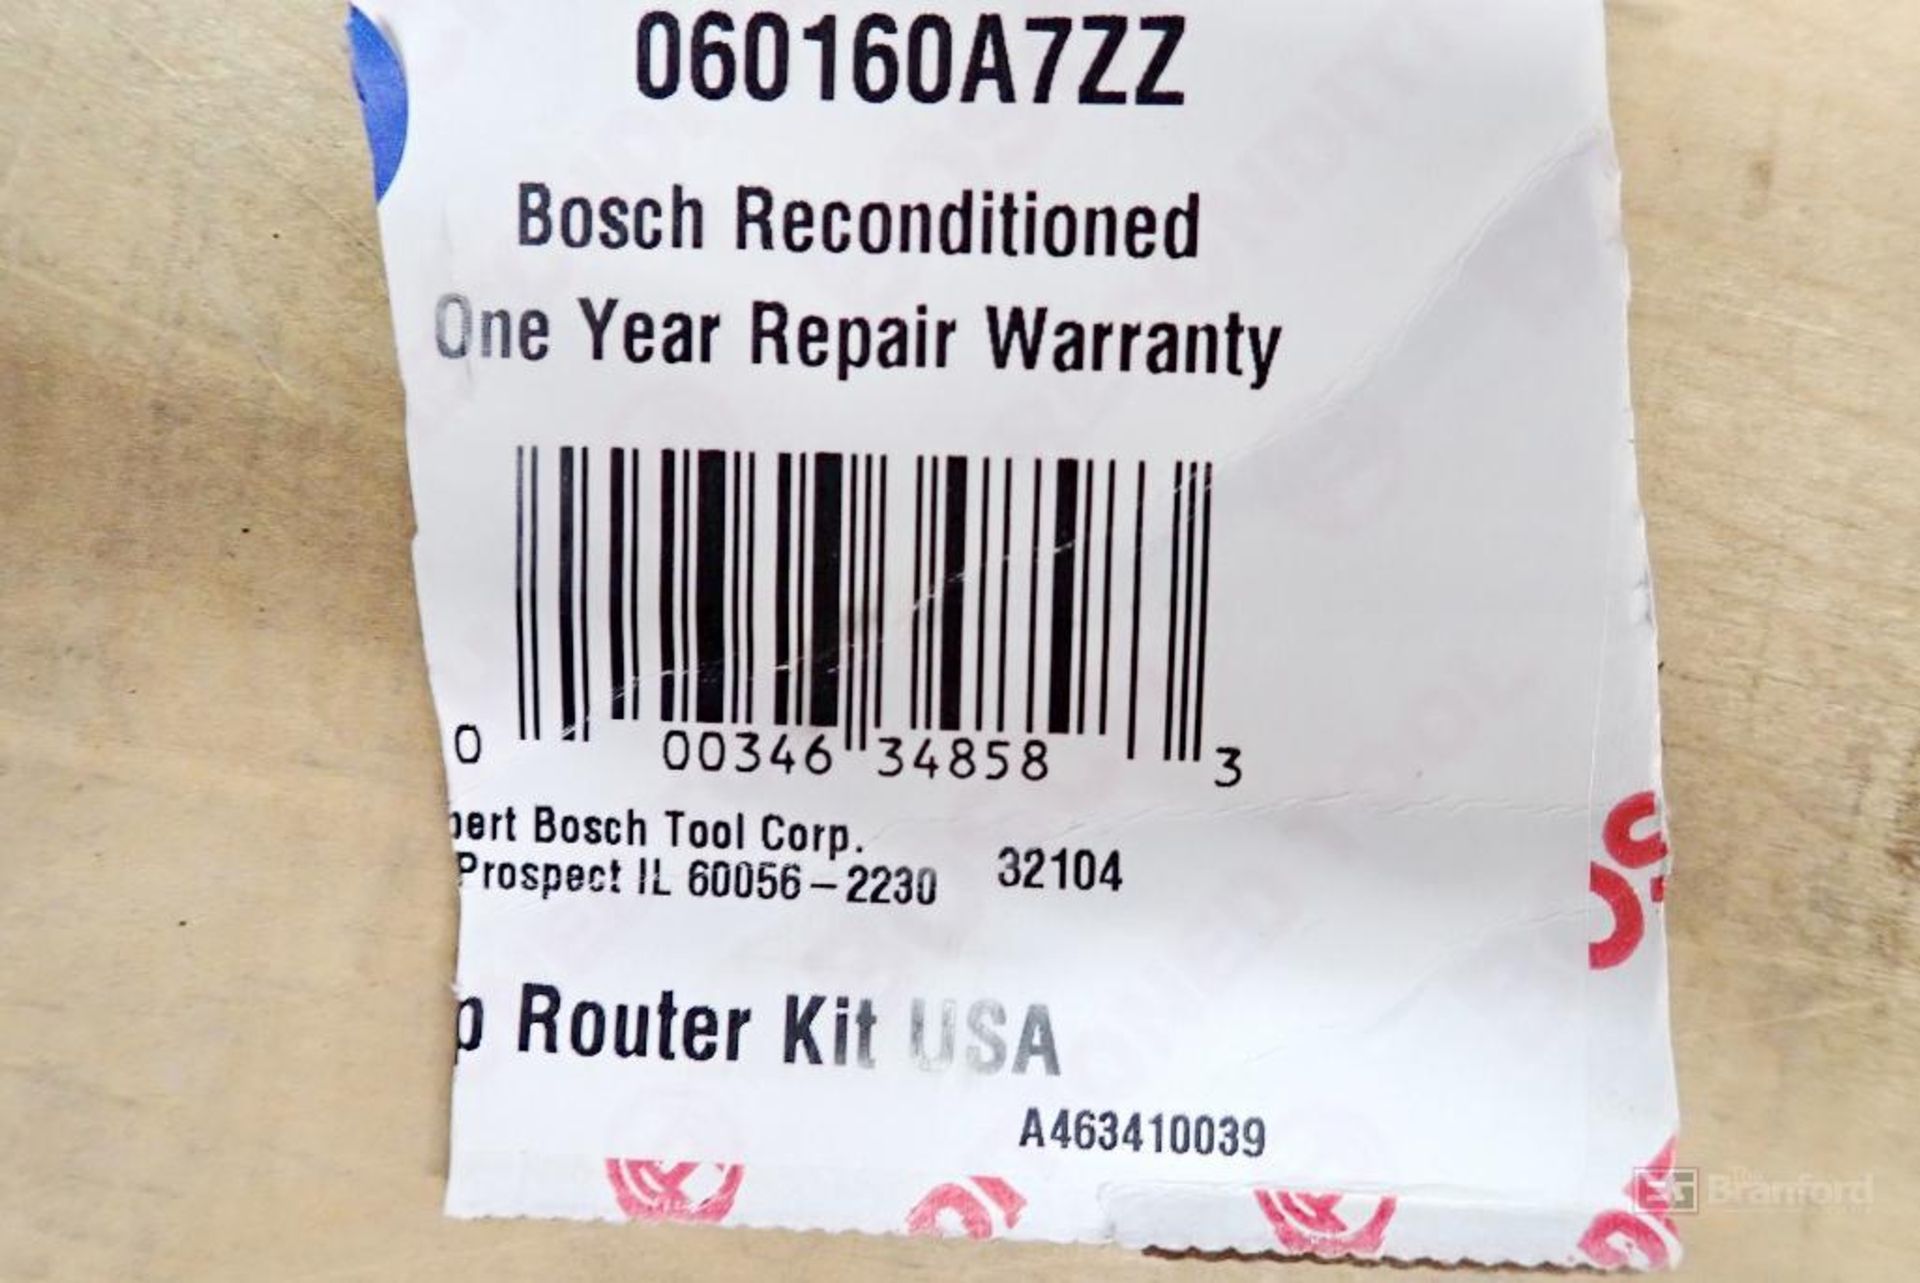 Bosch PR20EVSK-RT Router Kit - Image 2 of 5